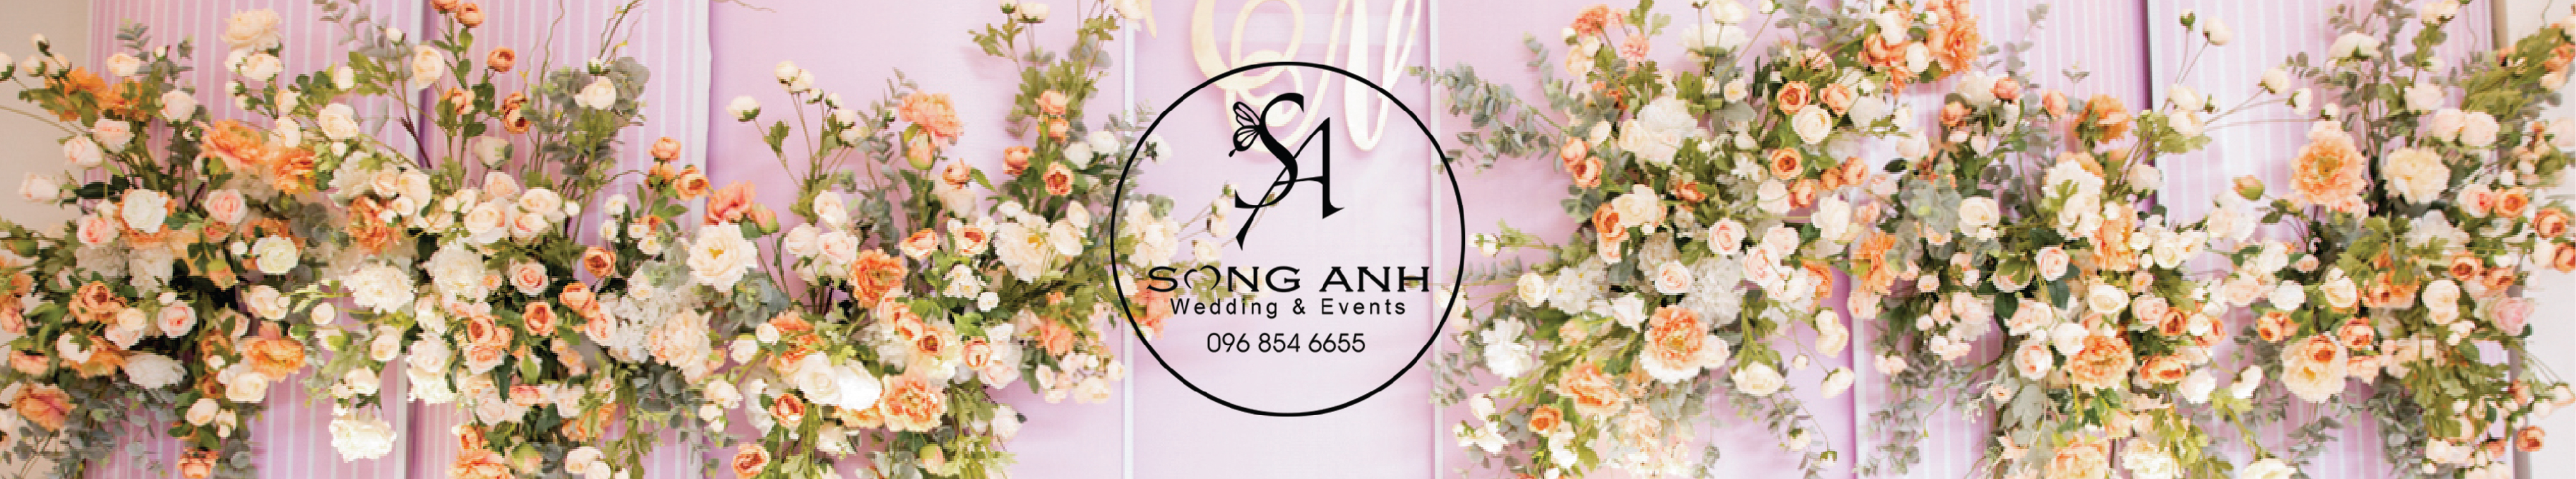 Dịch Vụ Trang Trí Tiệc Cưới - Đám Cưới - Song Anh Wedding